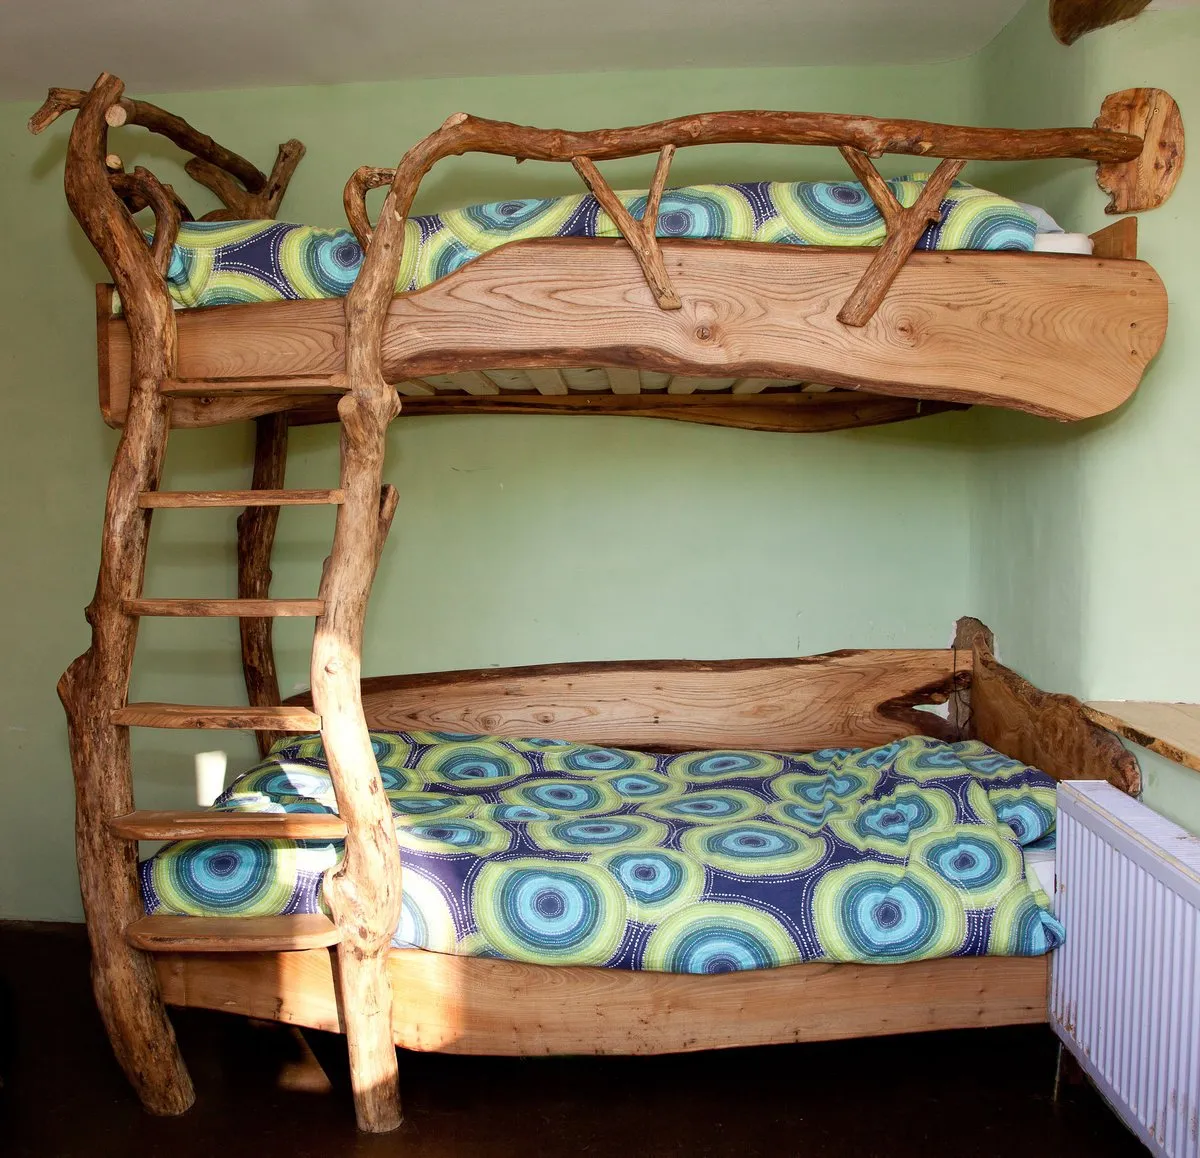 Двухъярусная самодельная кровать может в точности повторять фабричные модификации, а может выглядеть неординарно, как это показано на фото